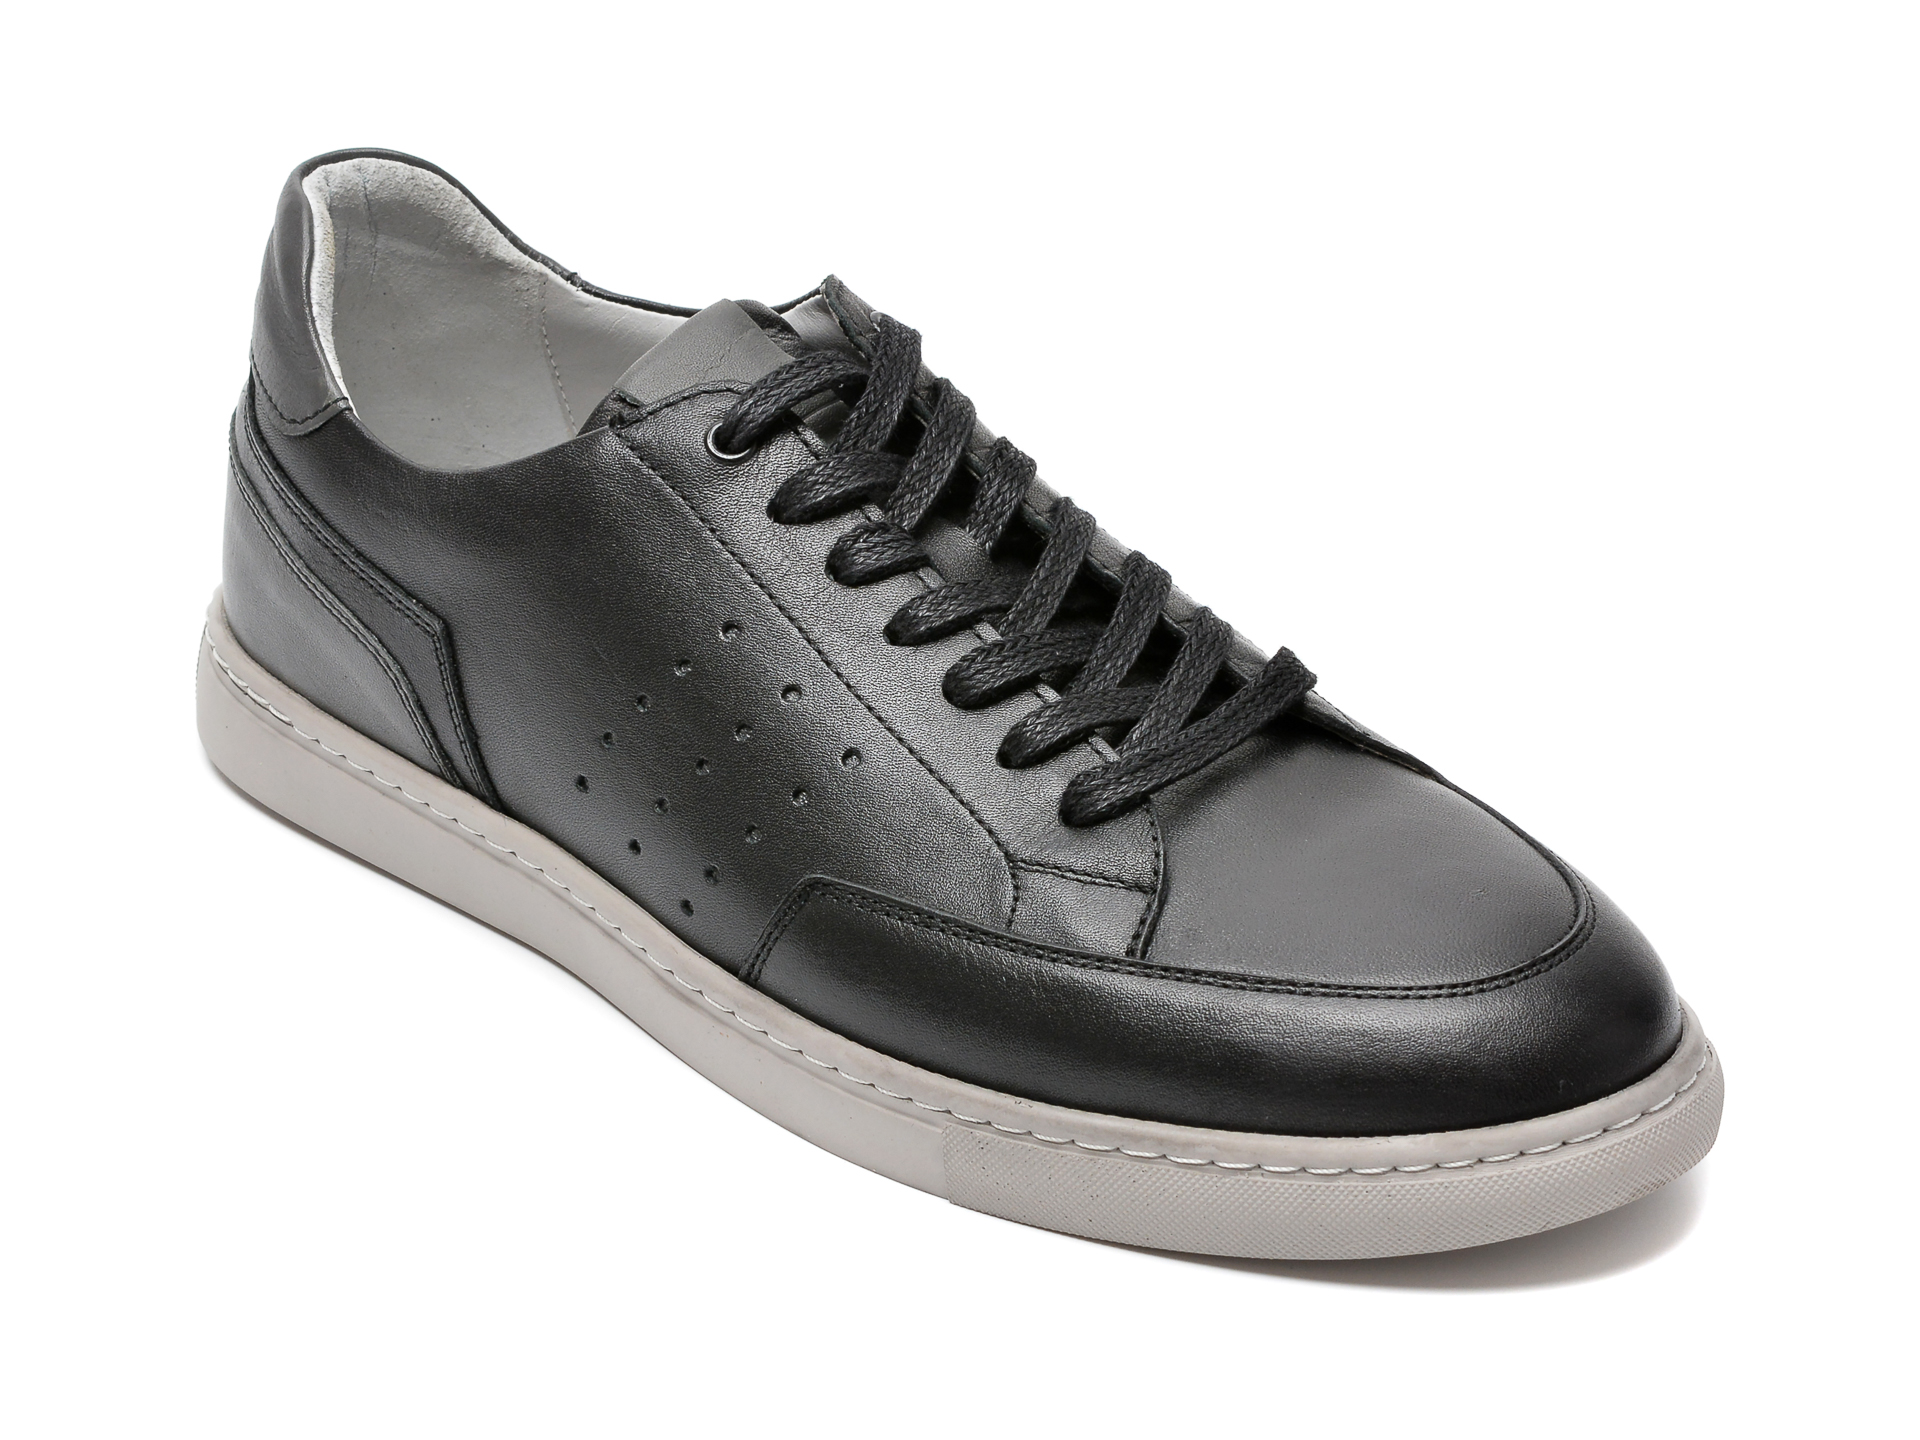 Pantofi OTTER negri, 52205, din piele naturala 2023 ❤️ Pret Super Black Friday otter.ro imagine noua 2022